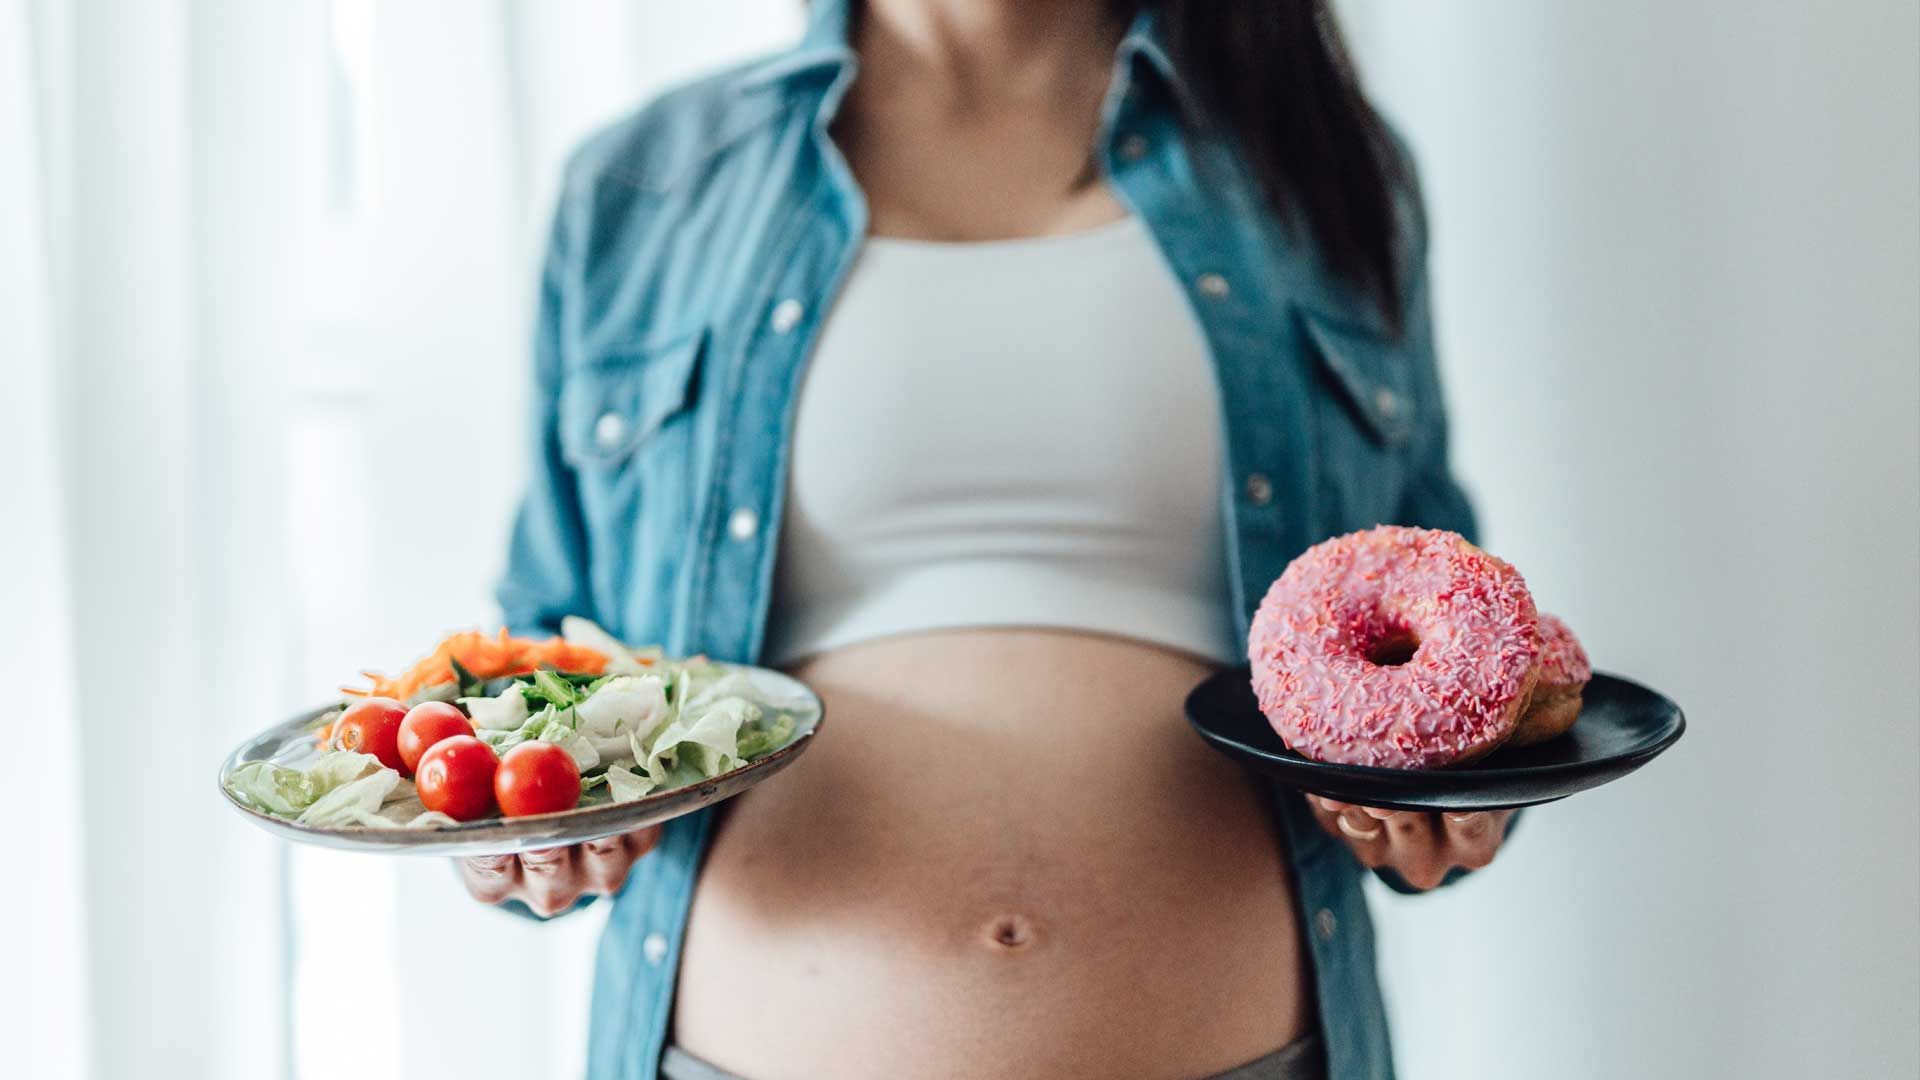 Ernährung in der Schwangerschaft: Was ist erlaubt?